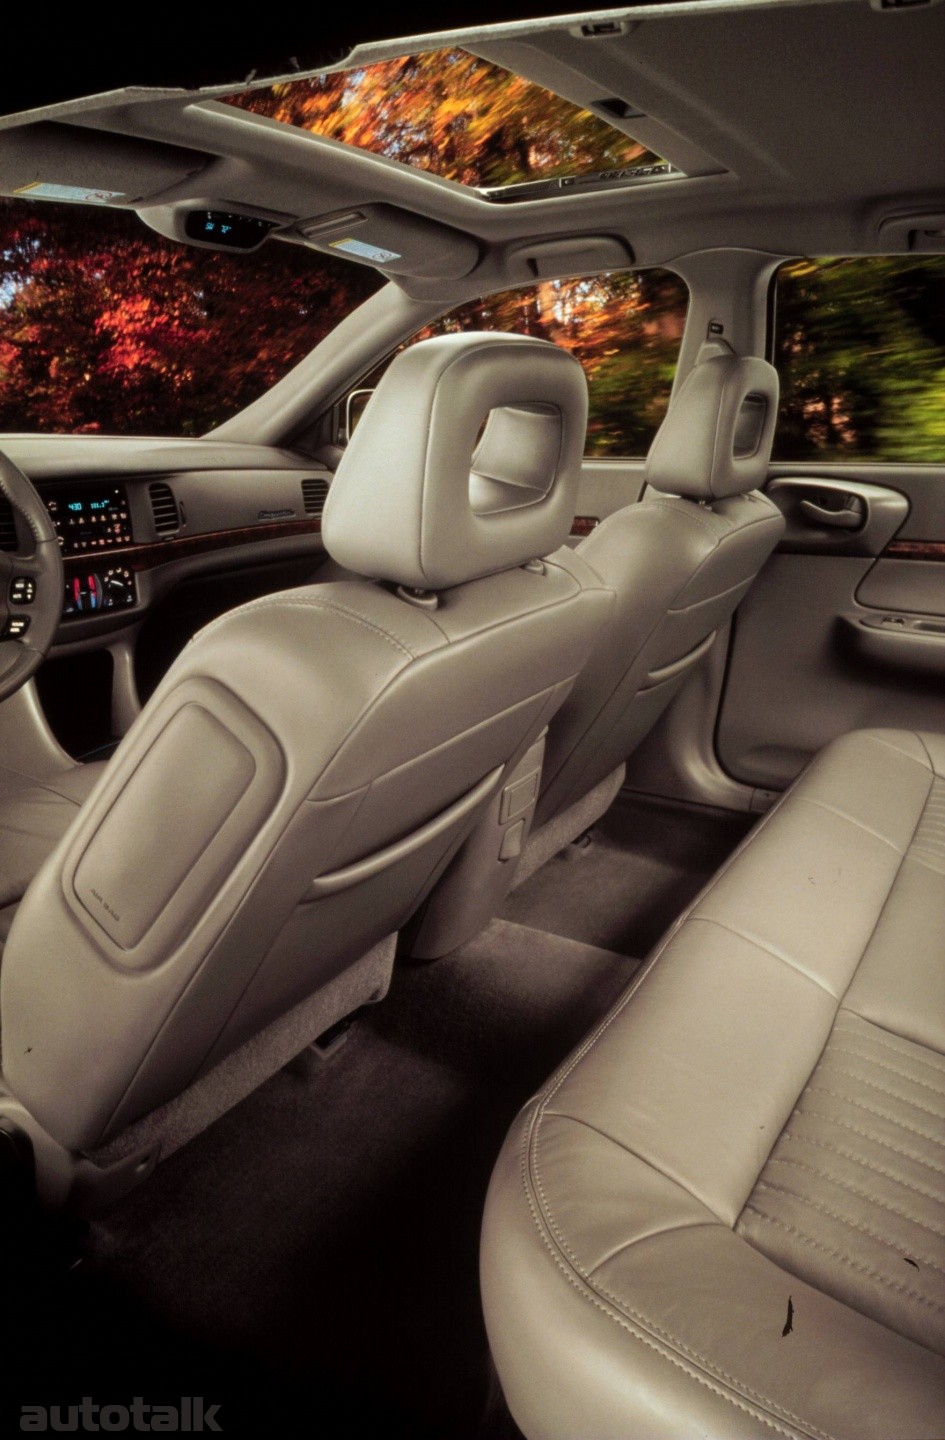 2000 Chevrolet Impala